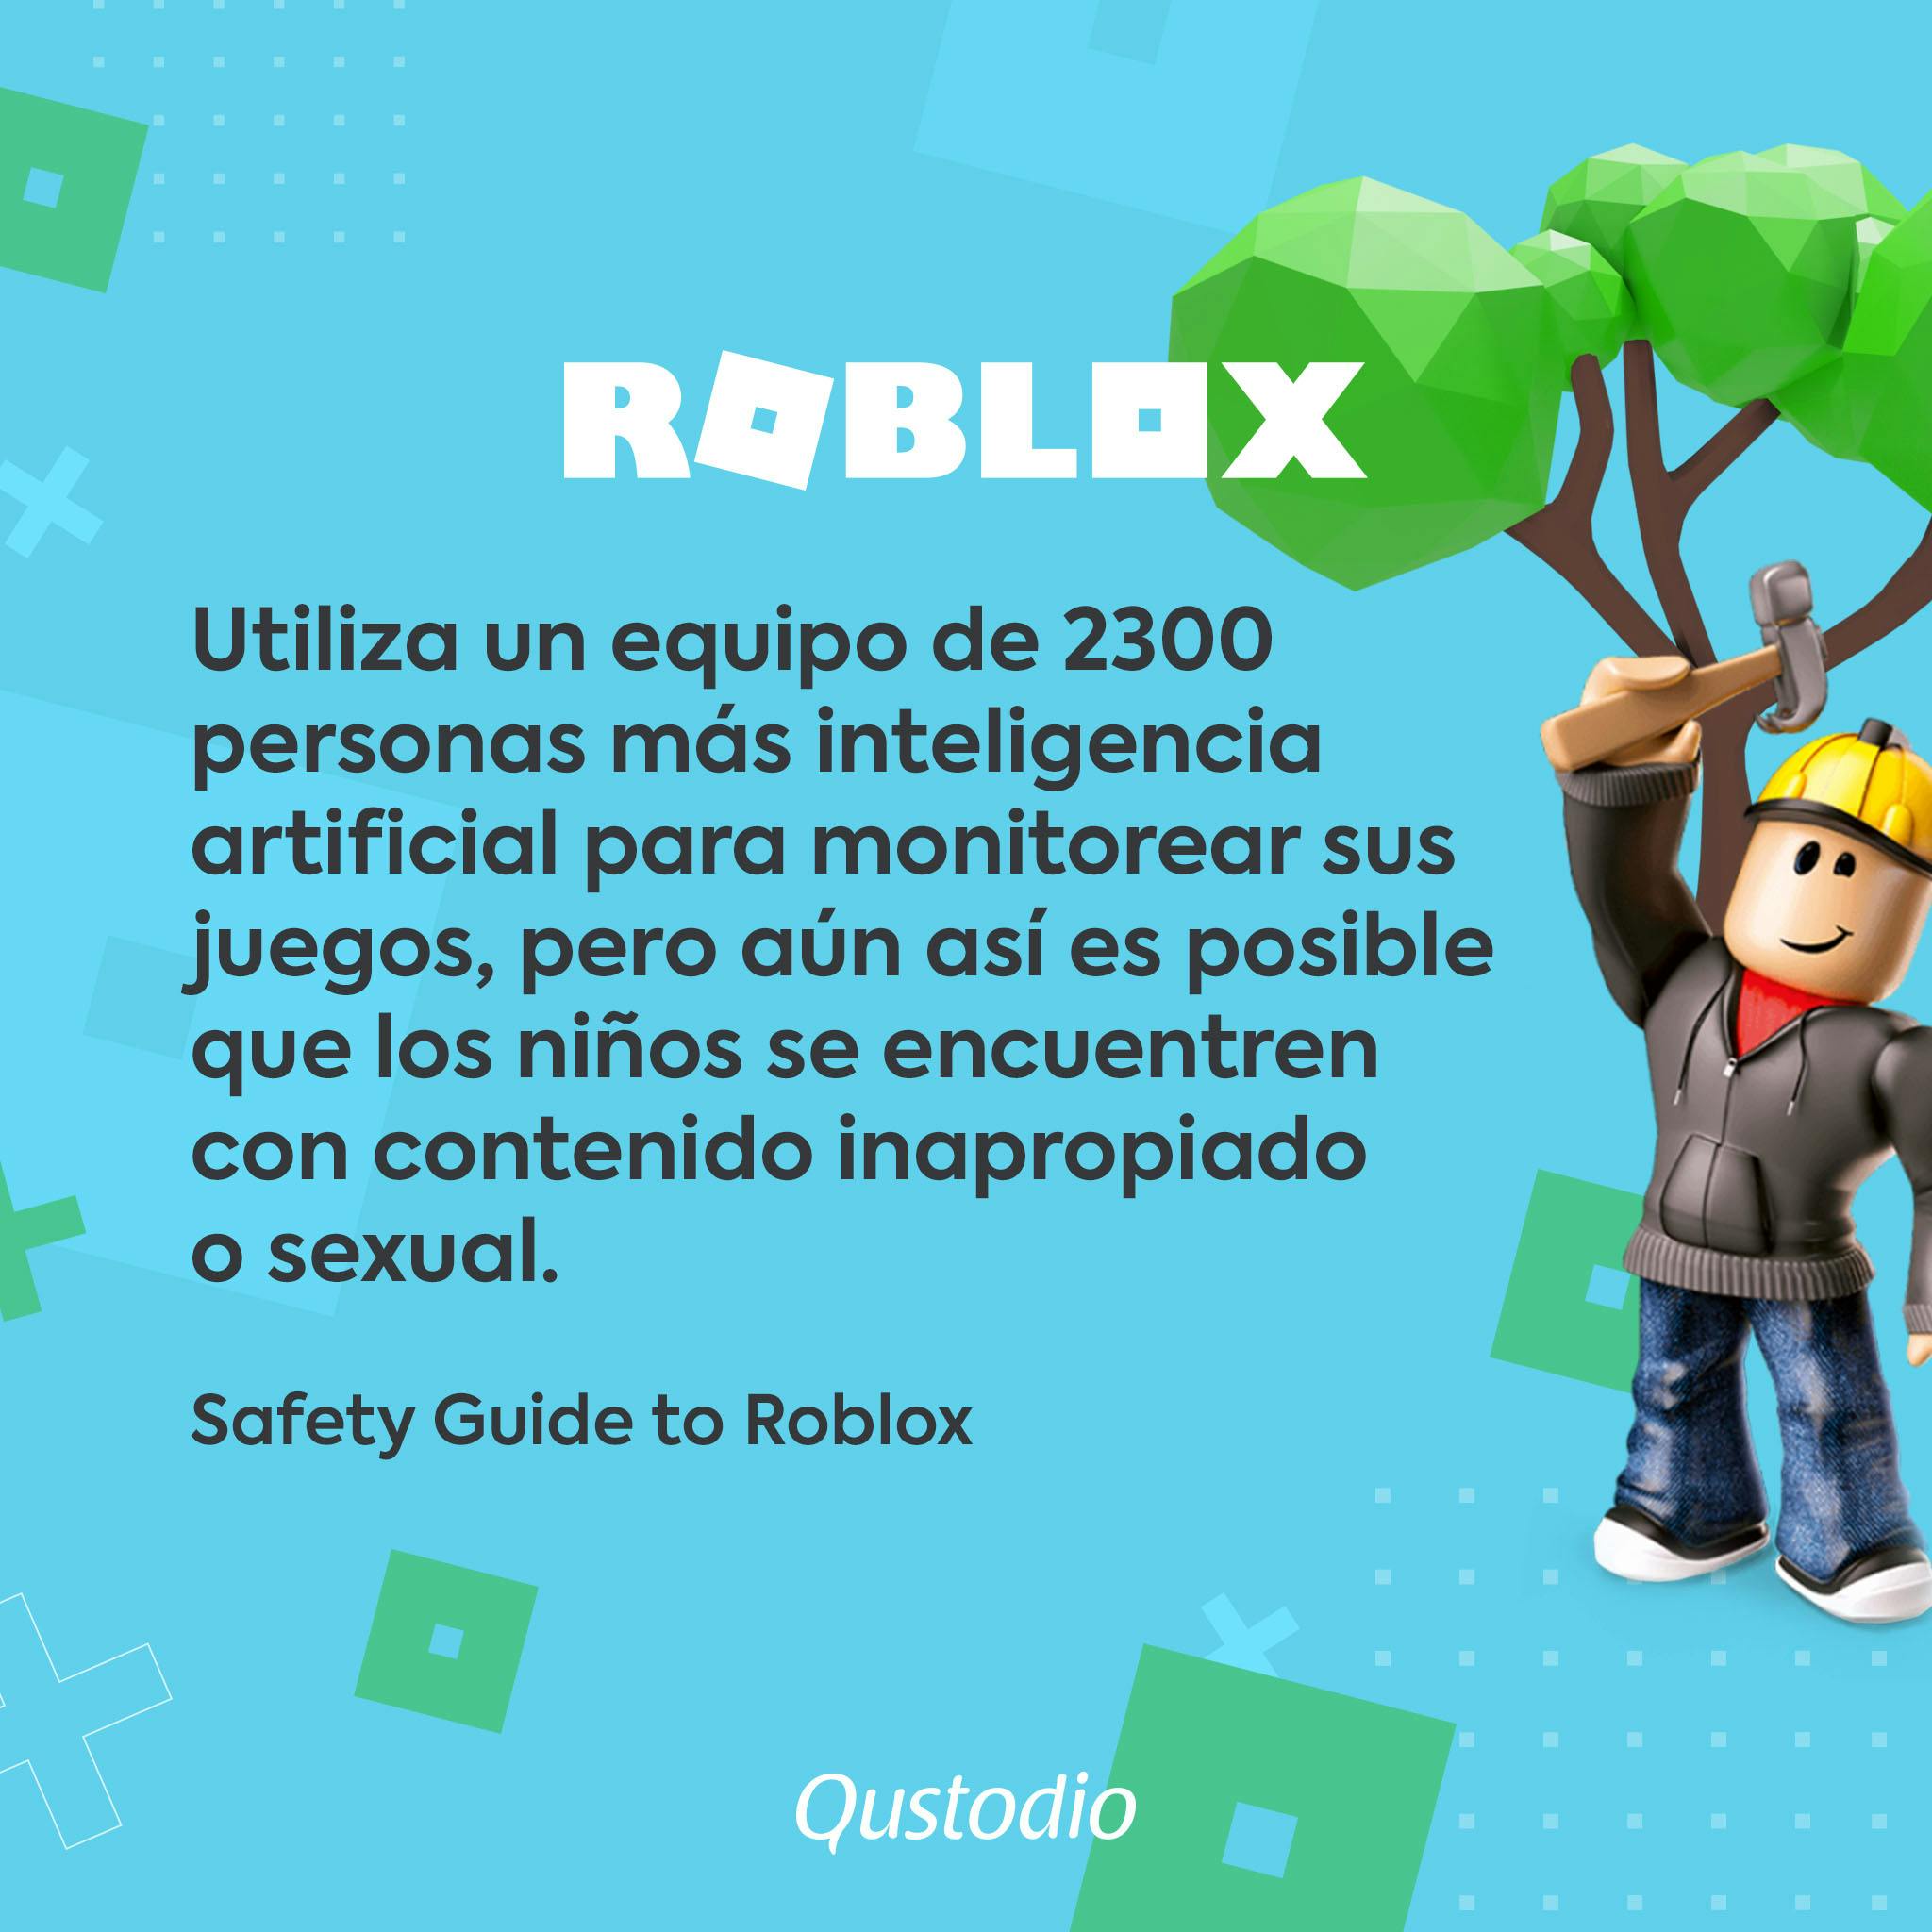 Es Roblox Seguro Para Nuestros Hijos Qustodio - es seguro comprar robux